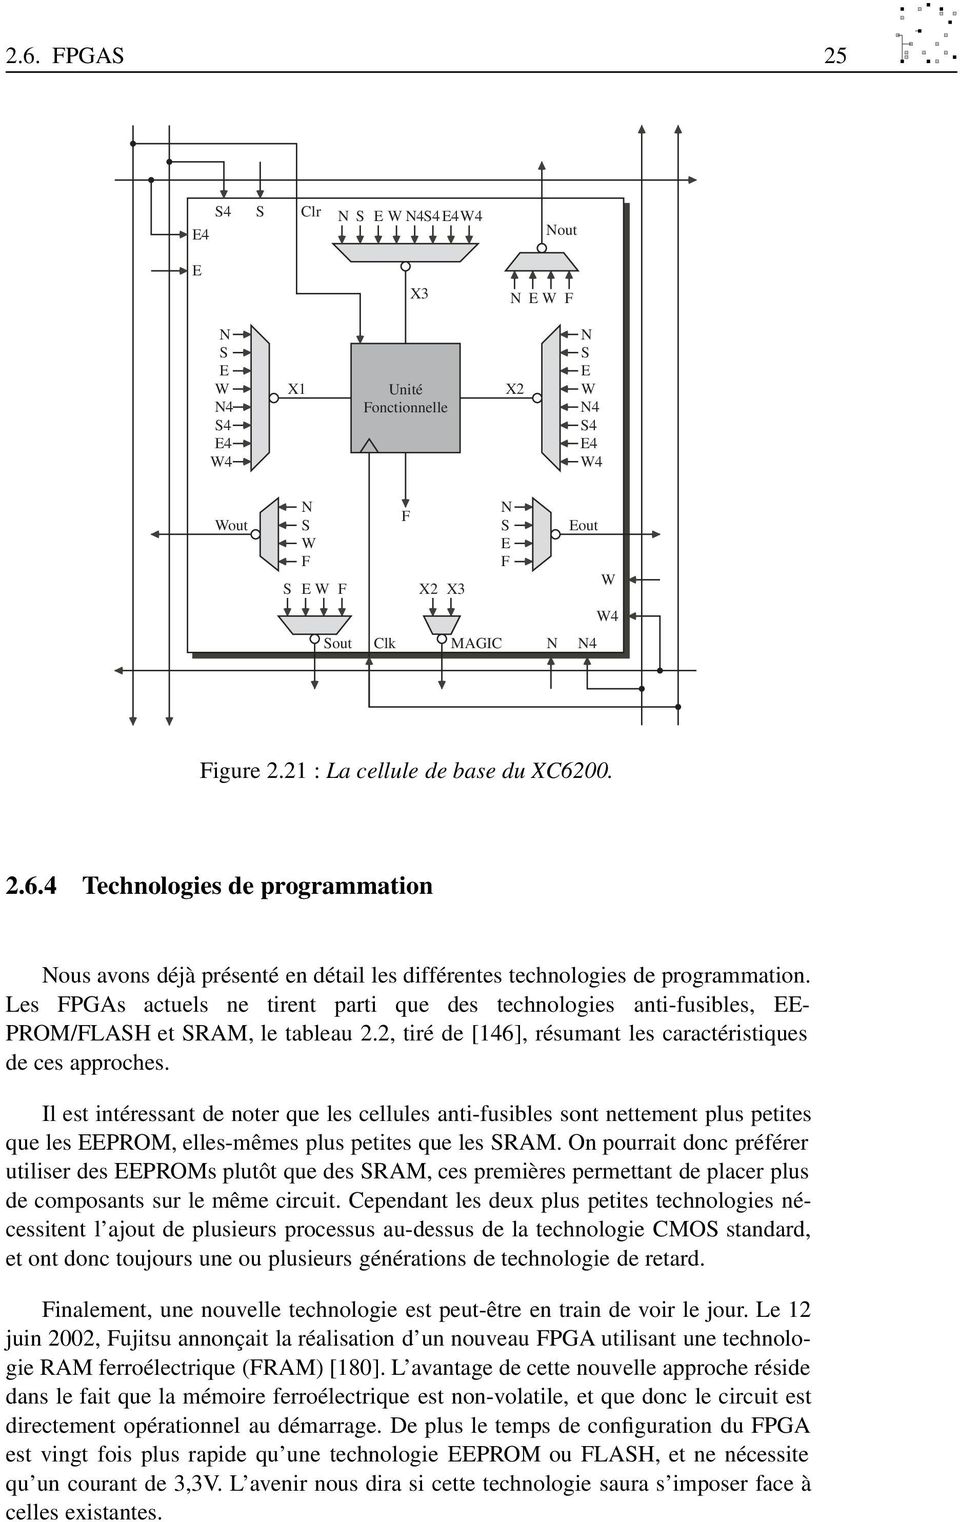 Les FPGAs actuels ne tirent parti que des technologies anti-fusibles, EE- PROM/FLASH et SRAM, le tableau 2.2, tiré de [146], résumant les caractéristiques de ces approches.